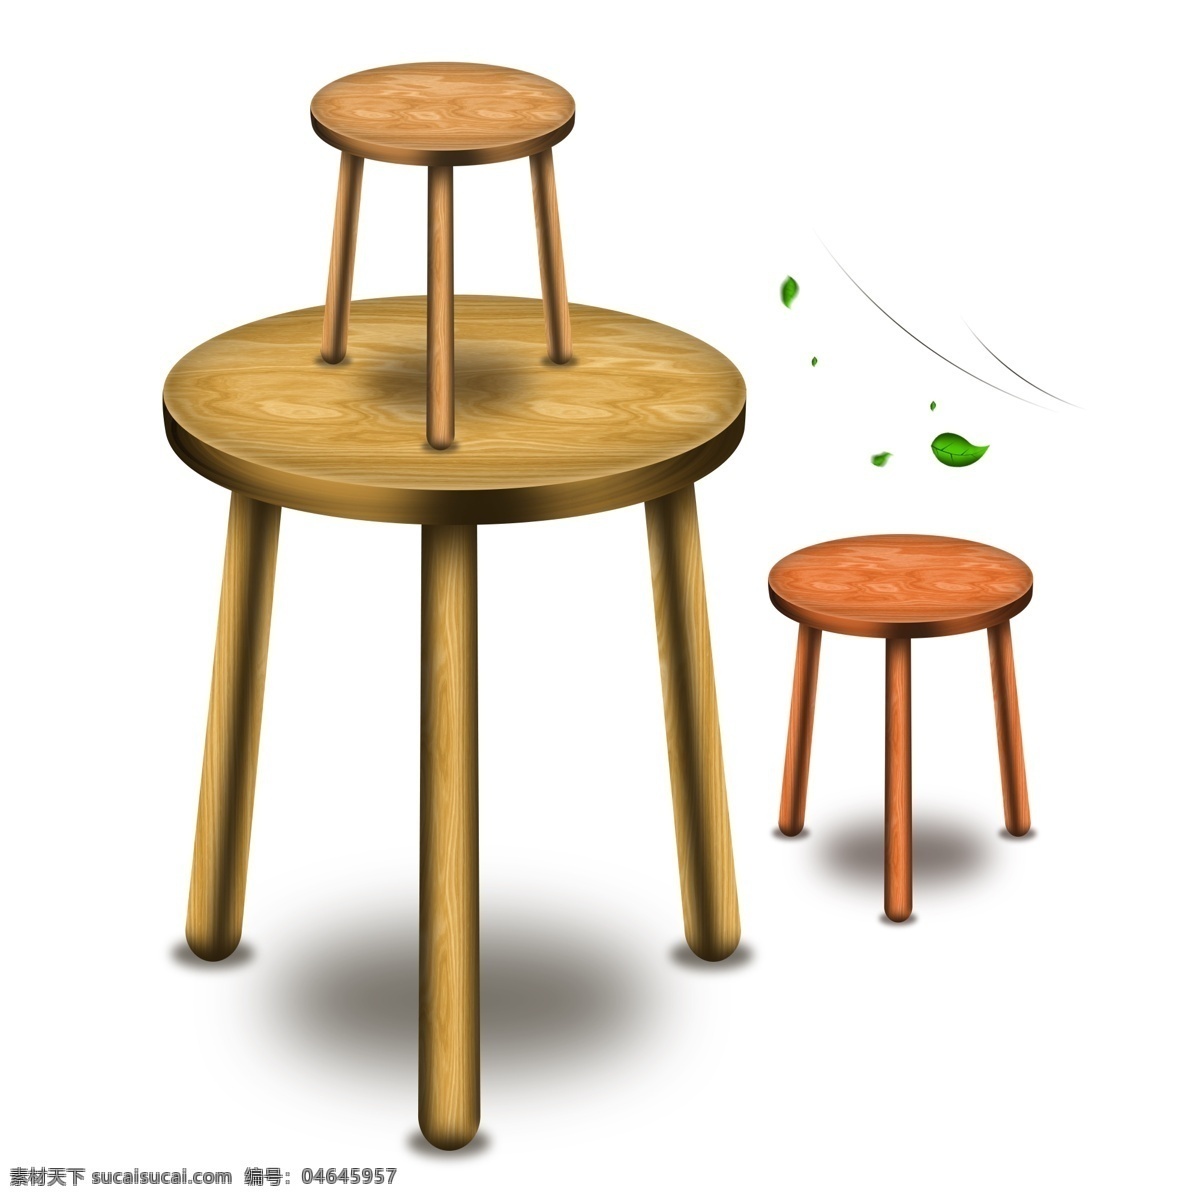 生活用品 圆形 三脚 凳子 效果 图案 木质感 坐凳子 木凳子 木质凳子 圆形凳子